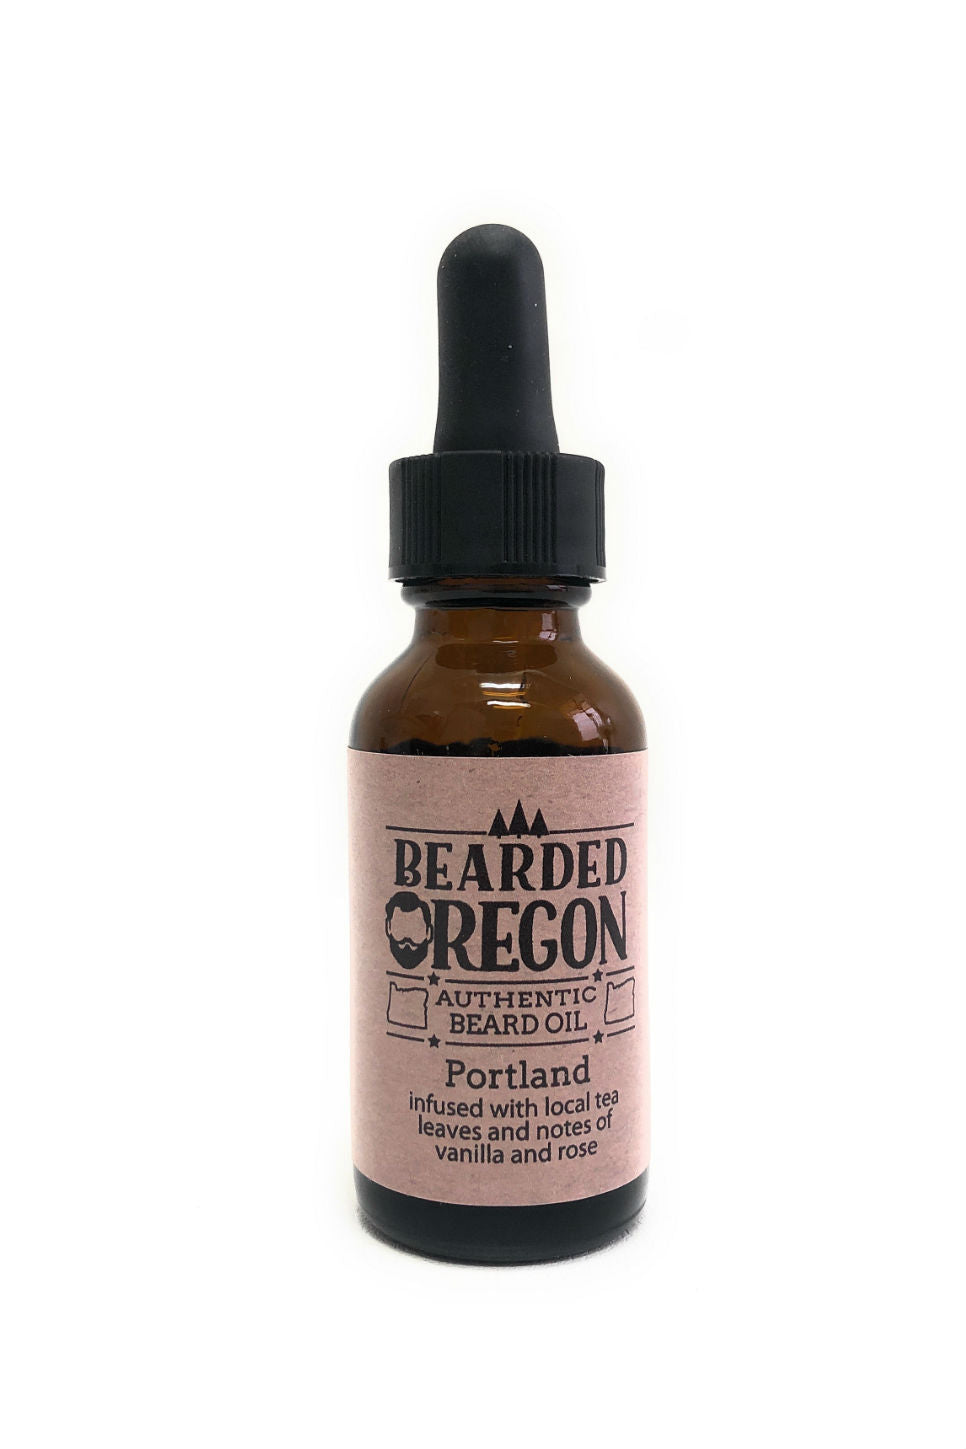 Bearded Oregon - Portland Beard Oil